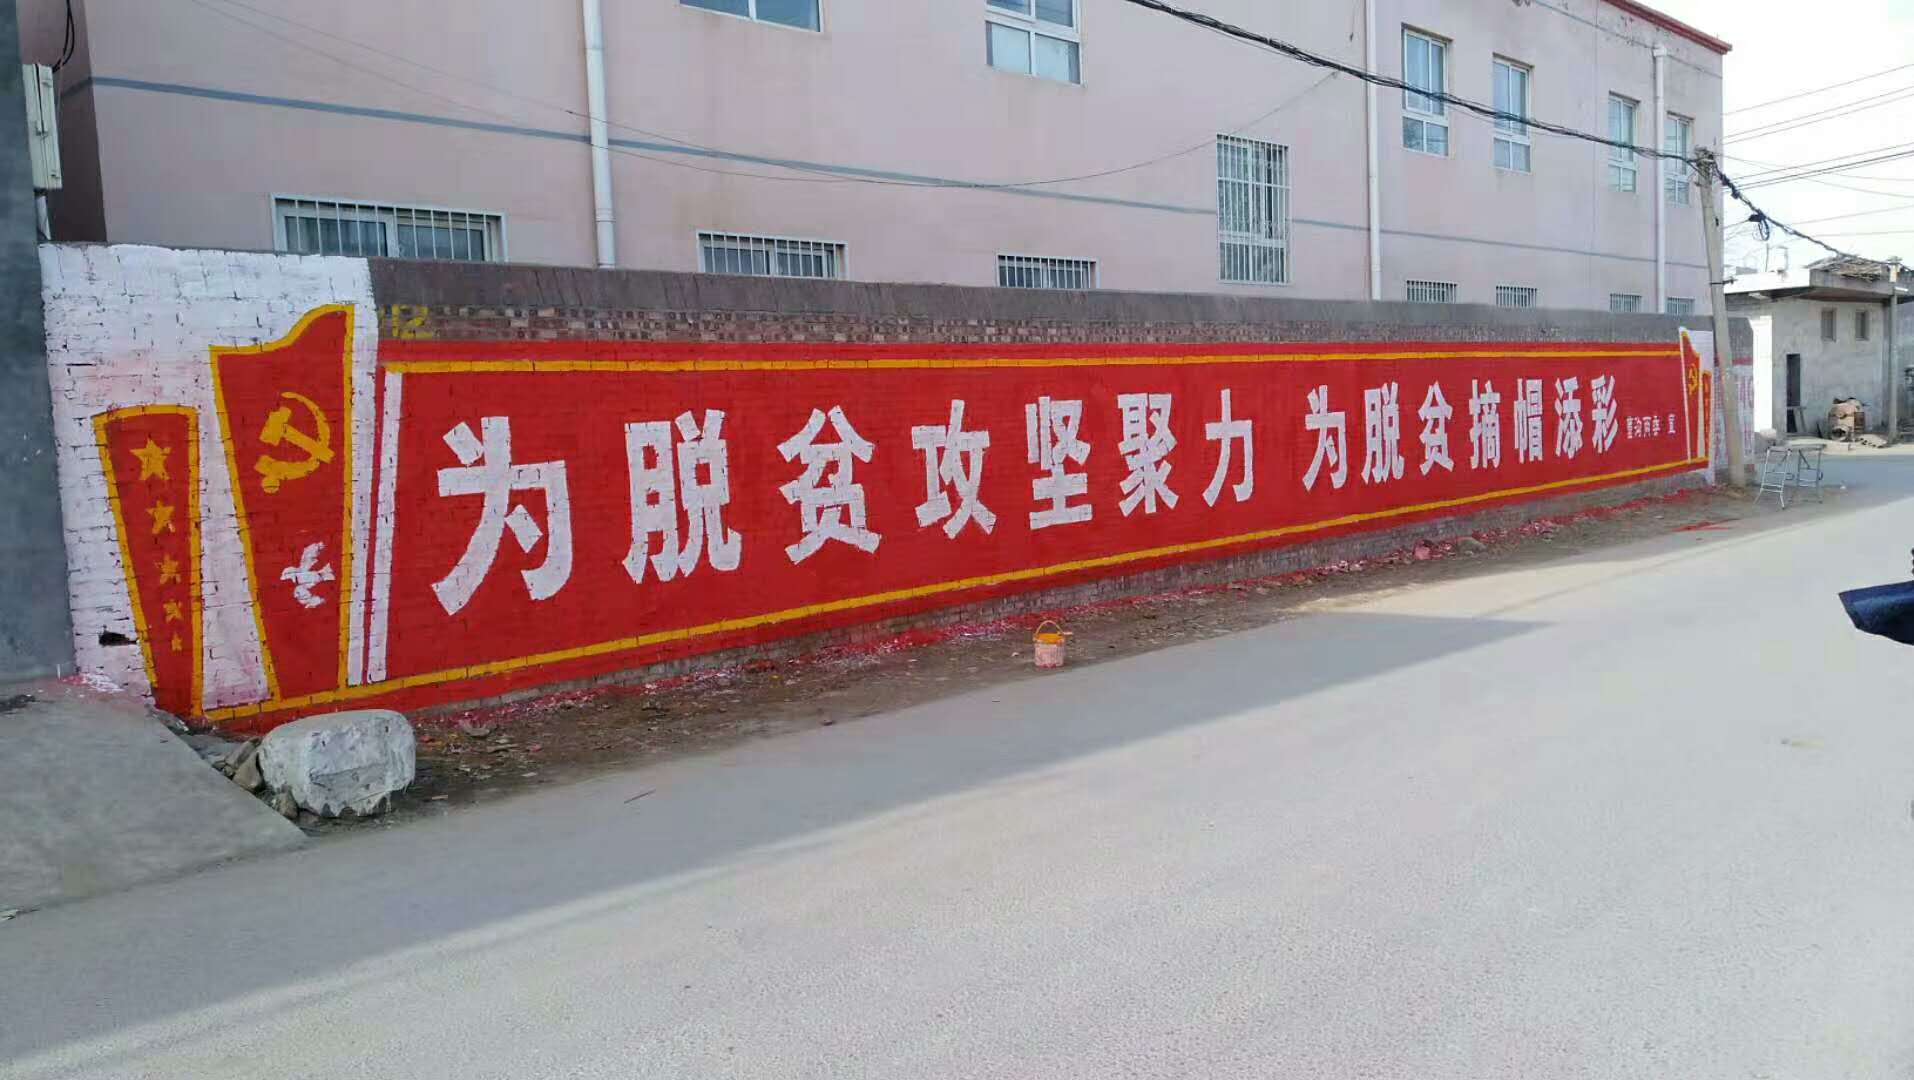 四川索尼手机刷墙体广告始终如一四川新农村彩绘广告